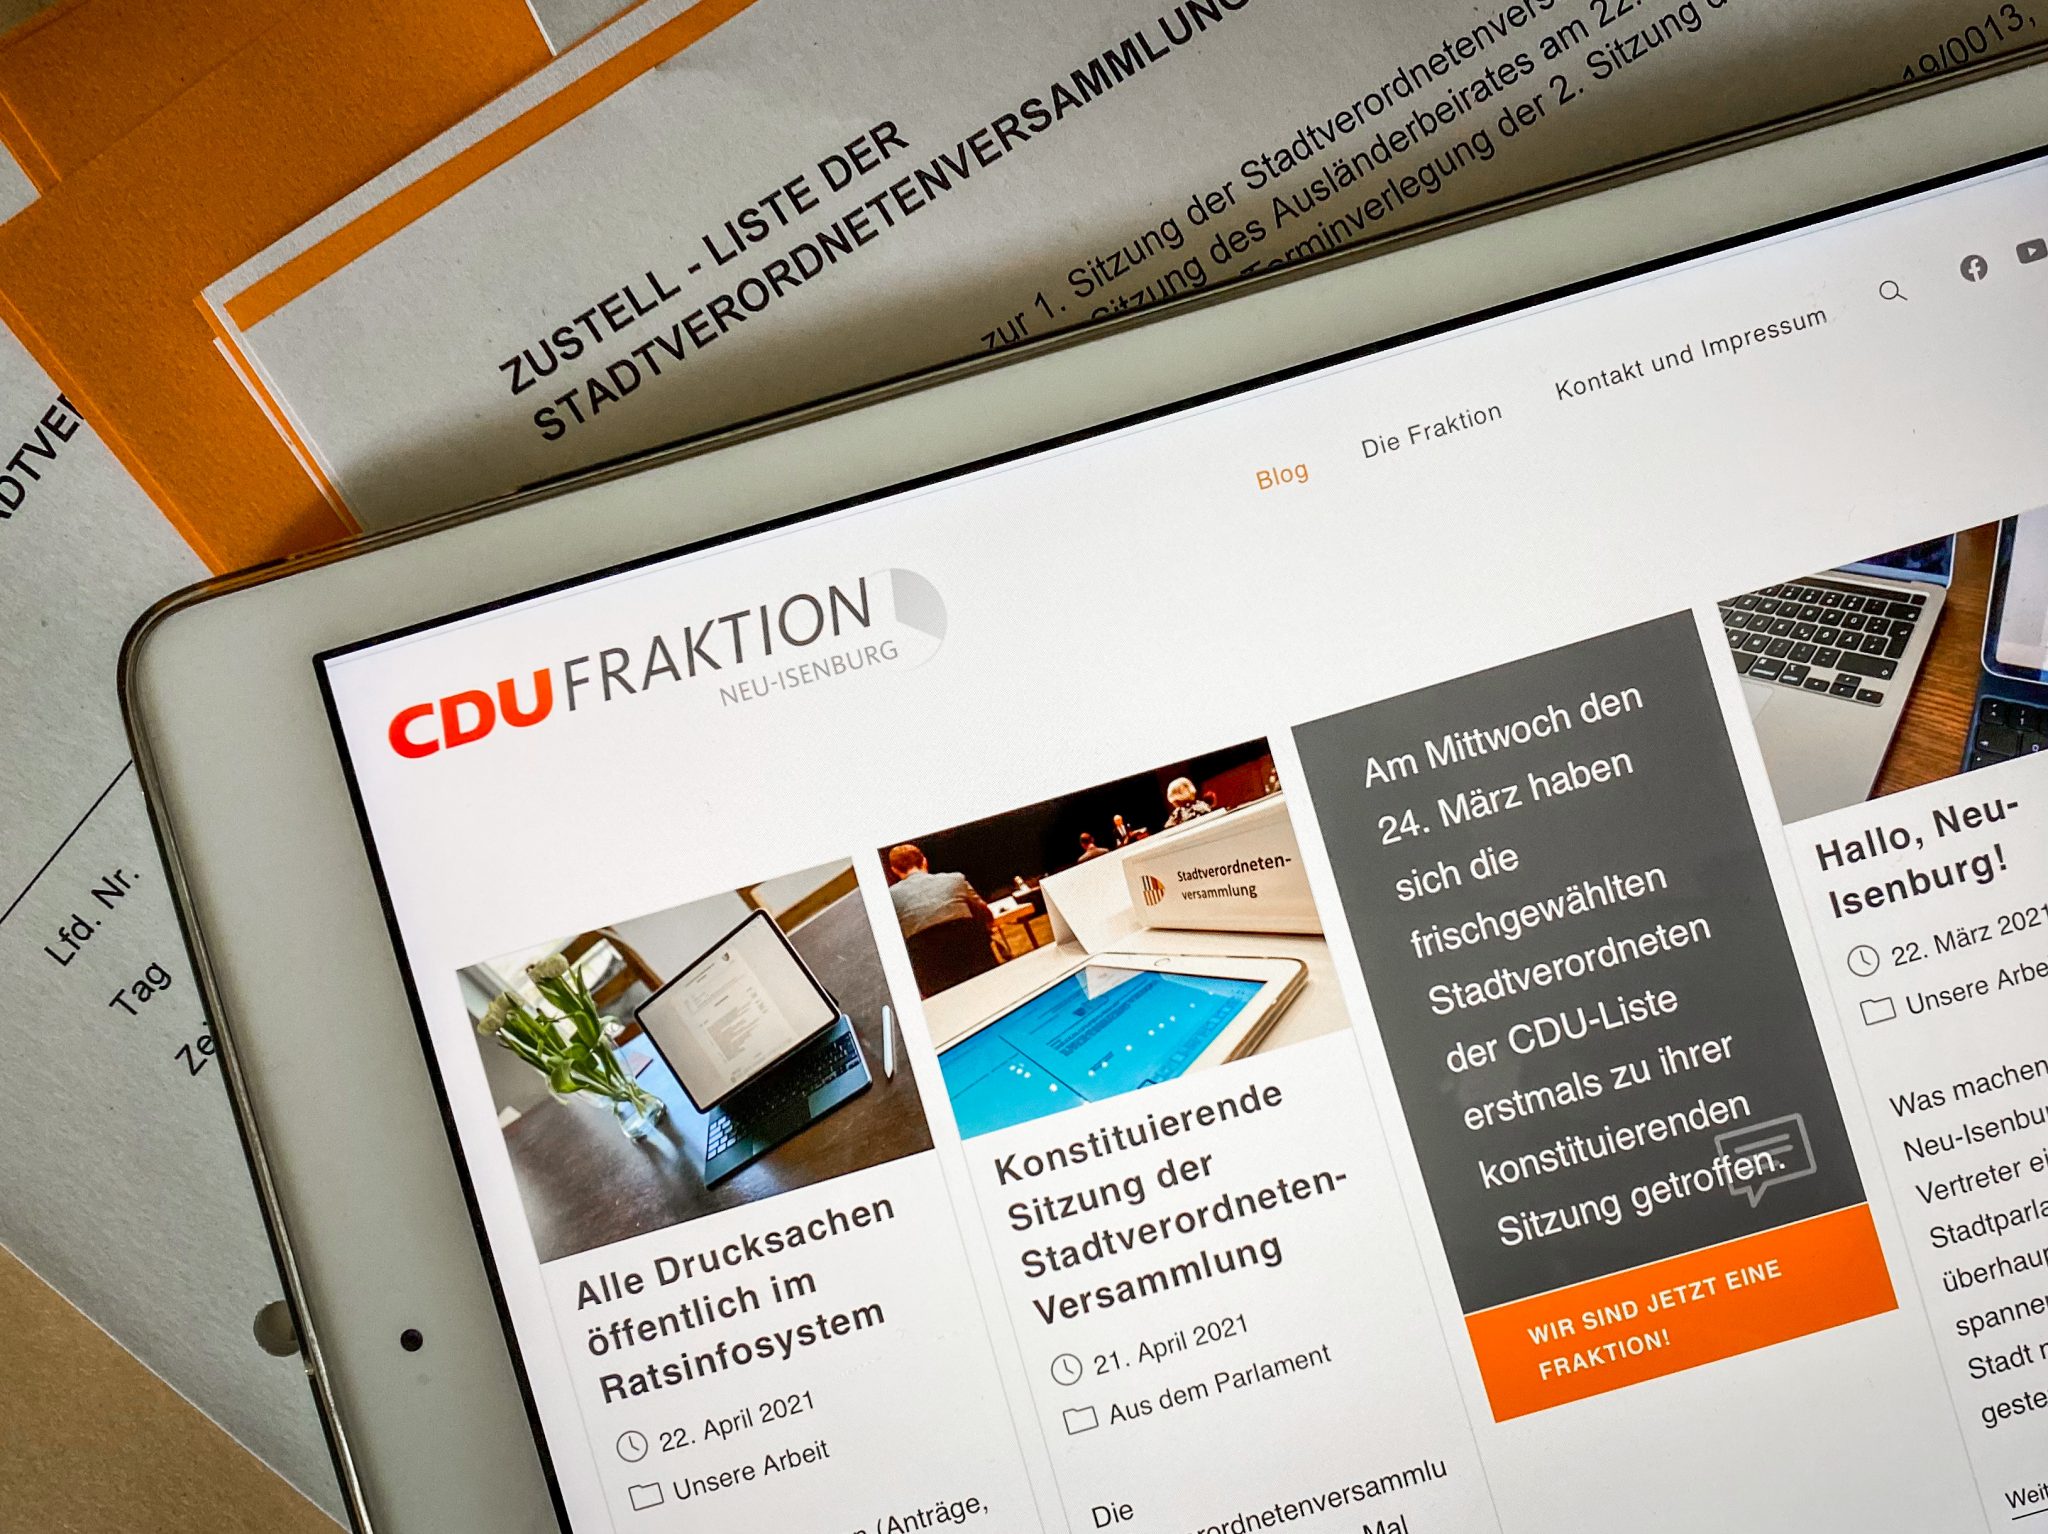 Die CDU-Fraktion bloggt! Neue Website berichtet ab sofort von der Arbeit im Stadtparlament